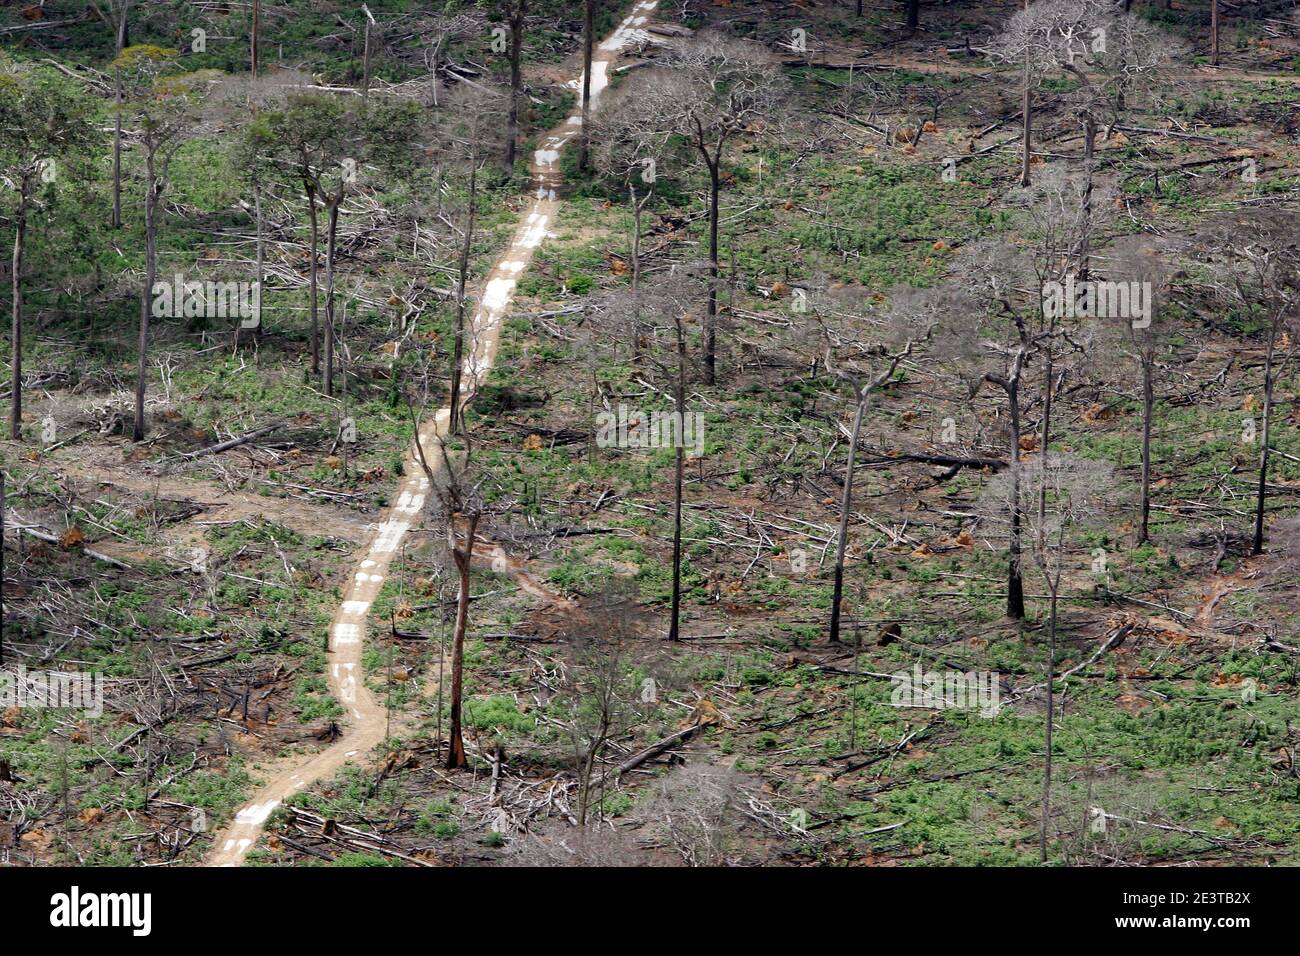 Dégagement de forêt amazonienne pour l'agriculture, près de Santarem - déforestation pour l'agro-industrie - développement économique créant le déséquilibre écologique. Ouverture d'une route où avant il y avait une forêt. Banque D'Images